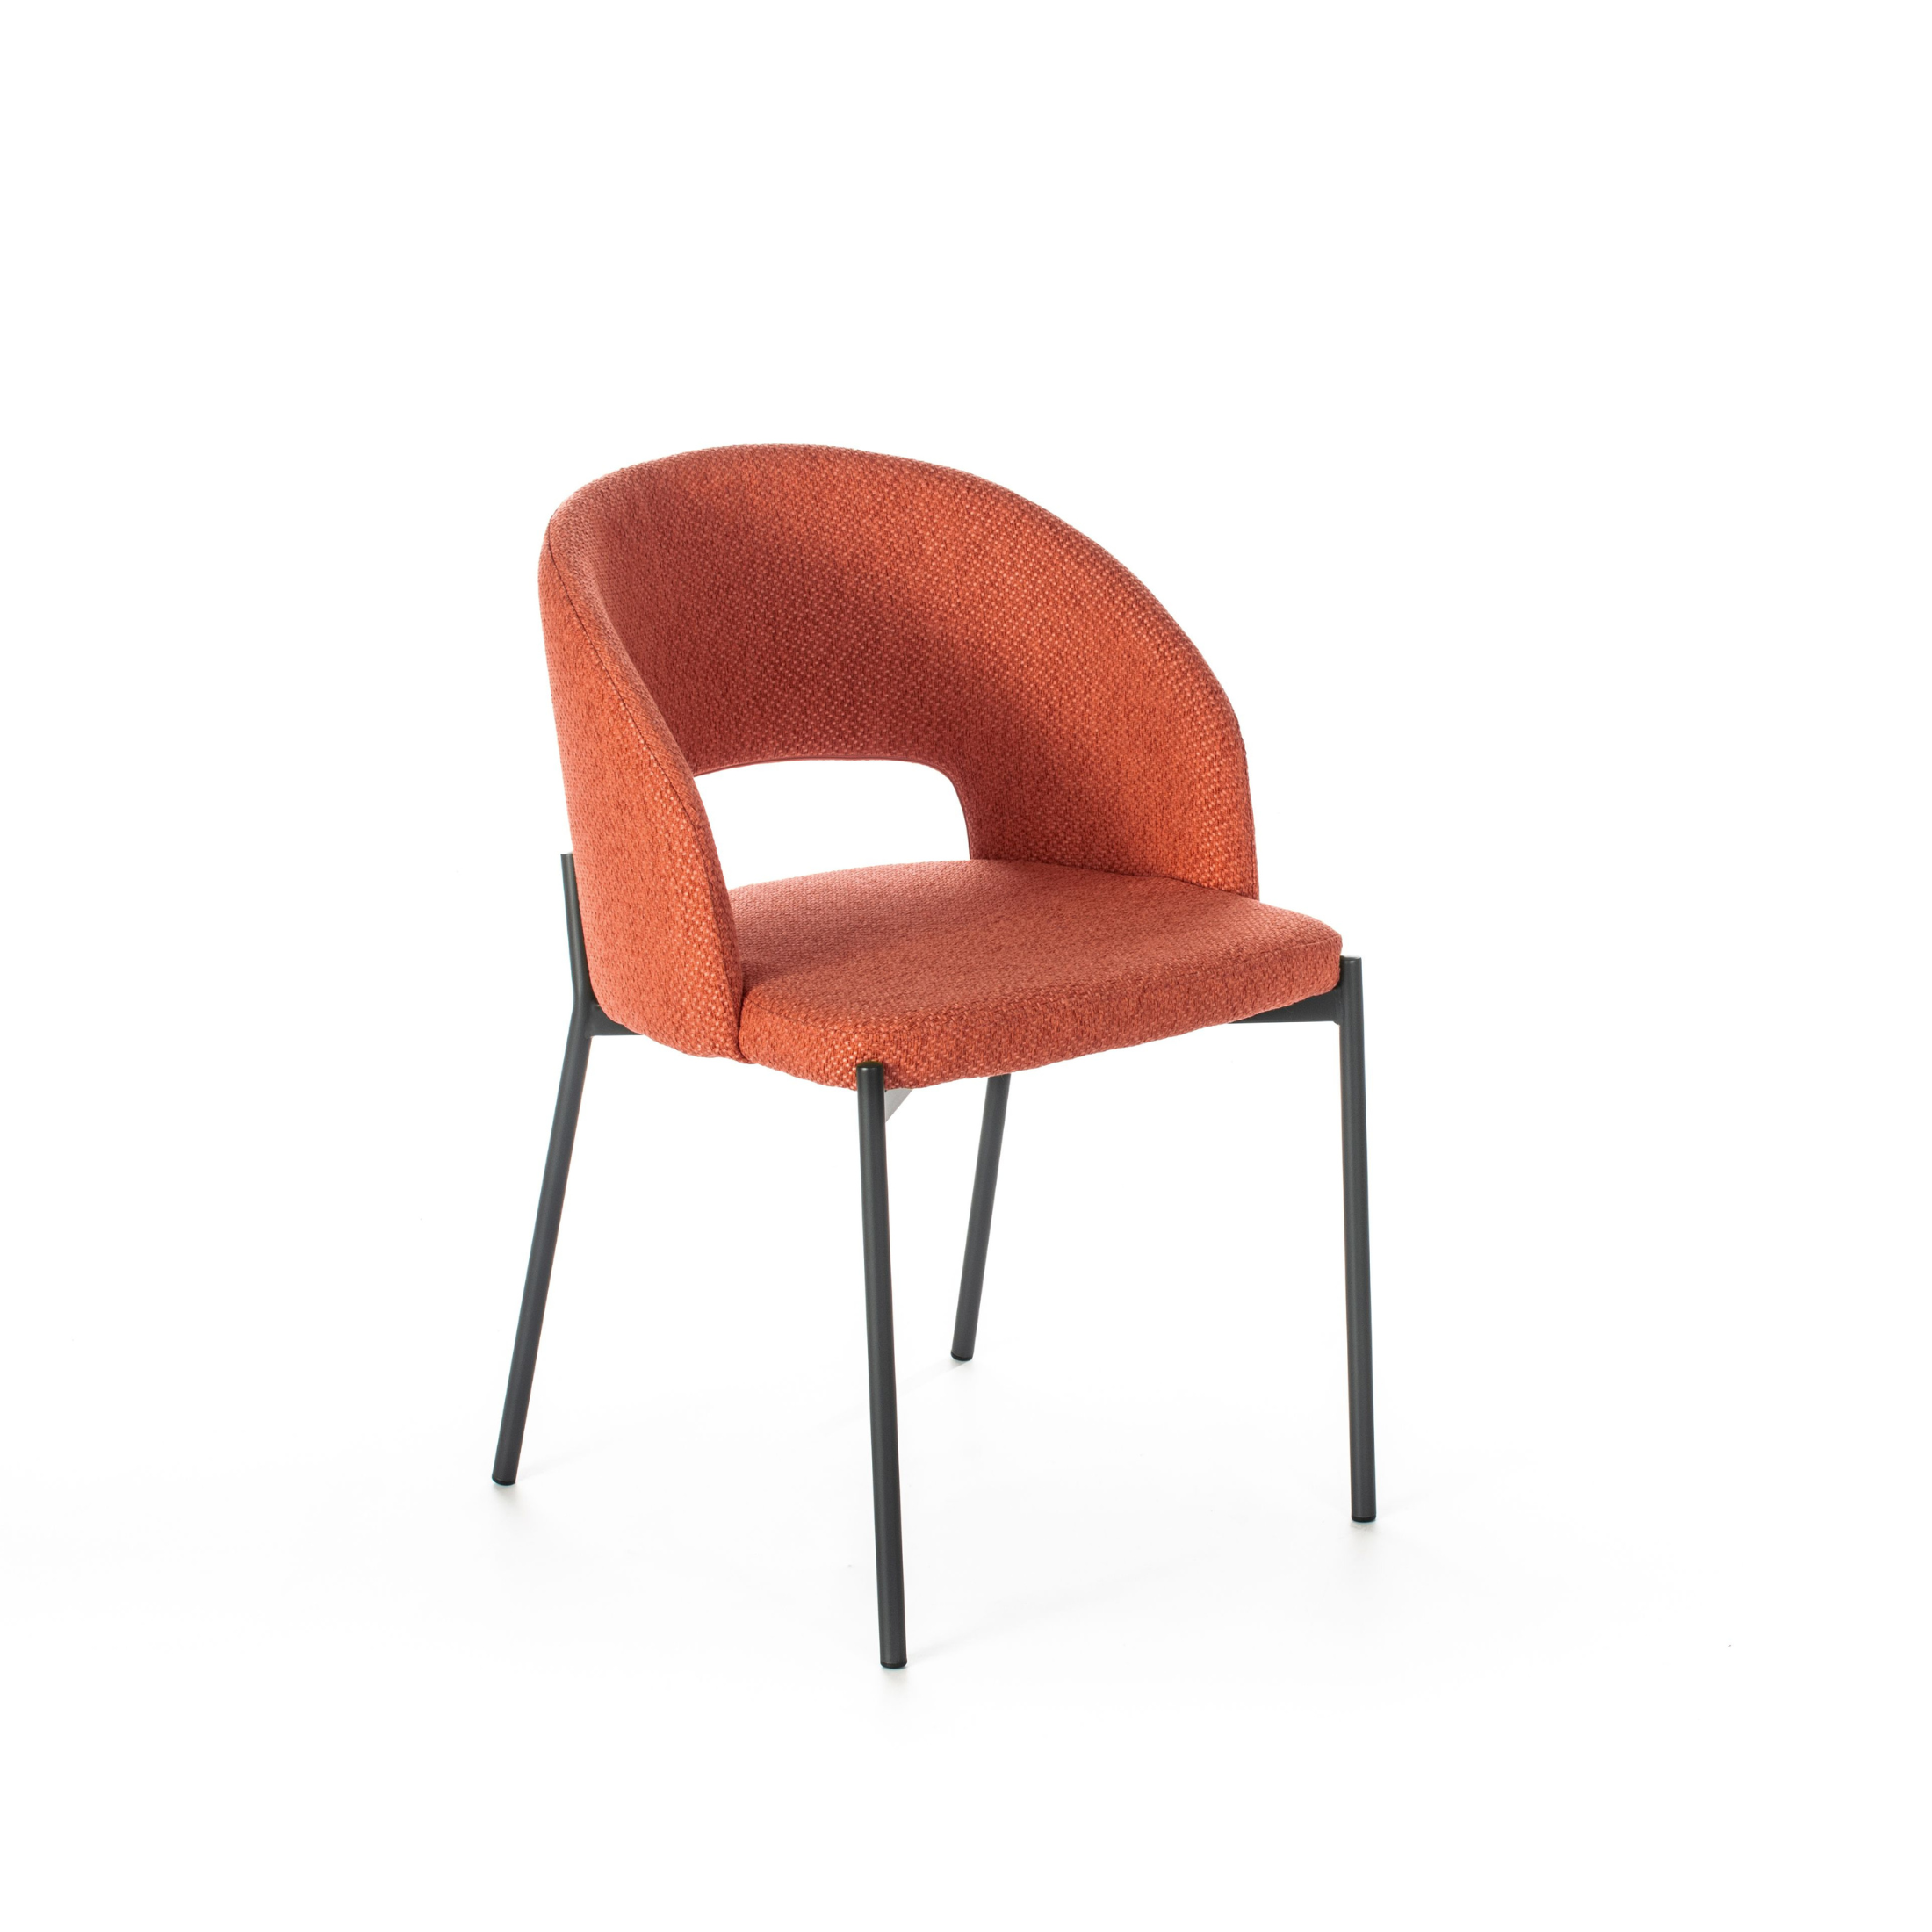 Silla redonda acolchada "Greta" sillón moderno en tela 56x52 cm 78,5h